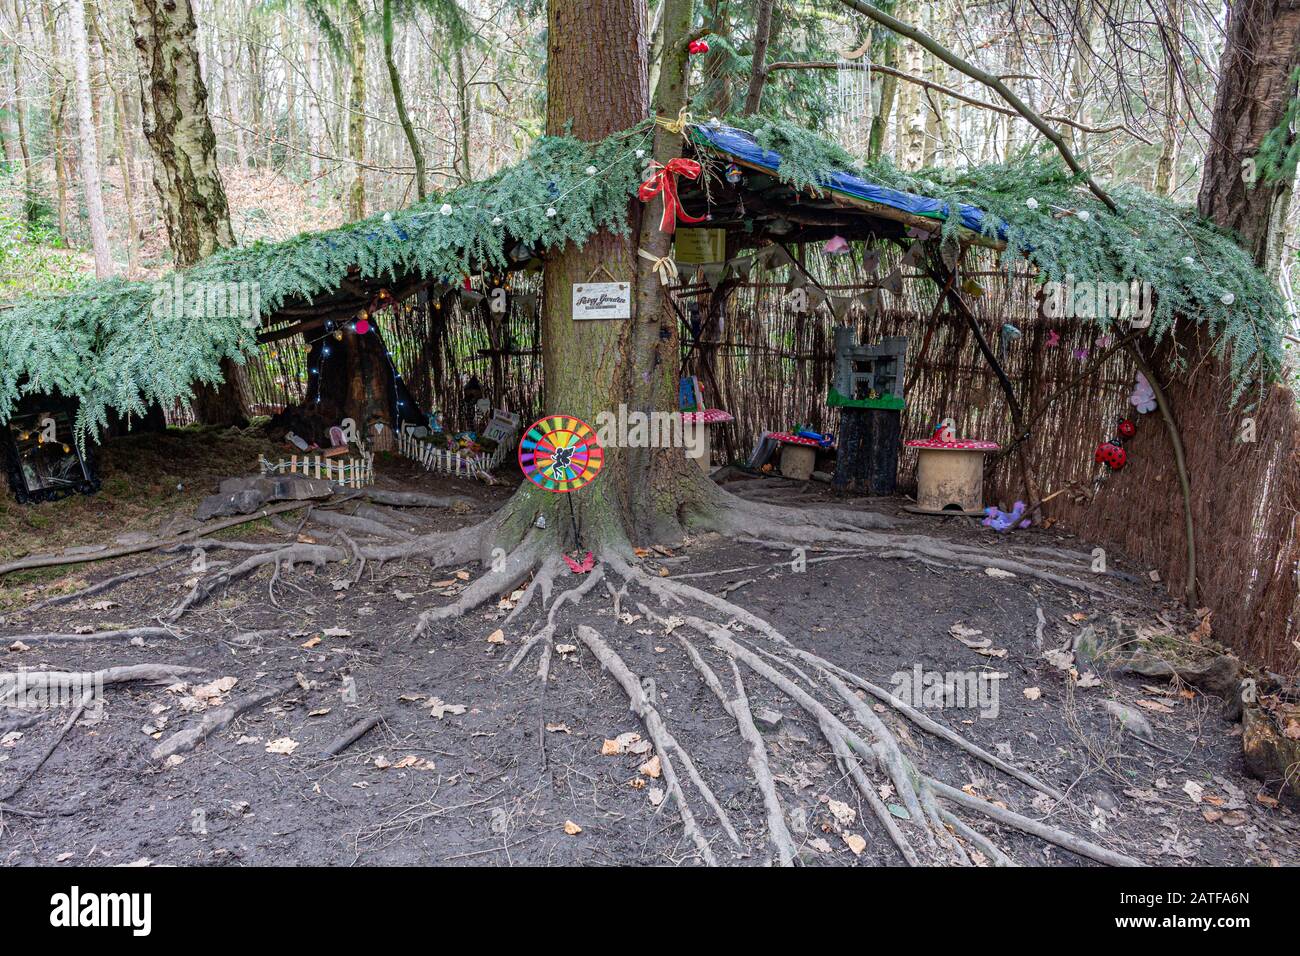 Geheimnisvolle und ungewöhnliche Feengrotte, versteckt im Wald. Etherow Country Park, Stockport, Cheshire, Großbritannien. Stockfoto